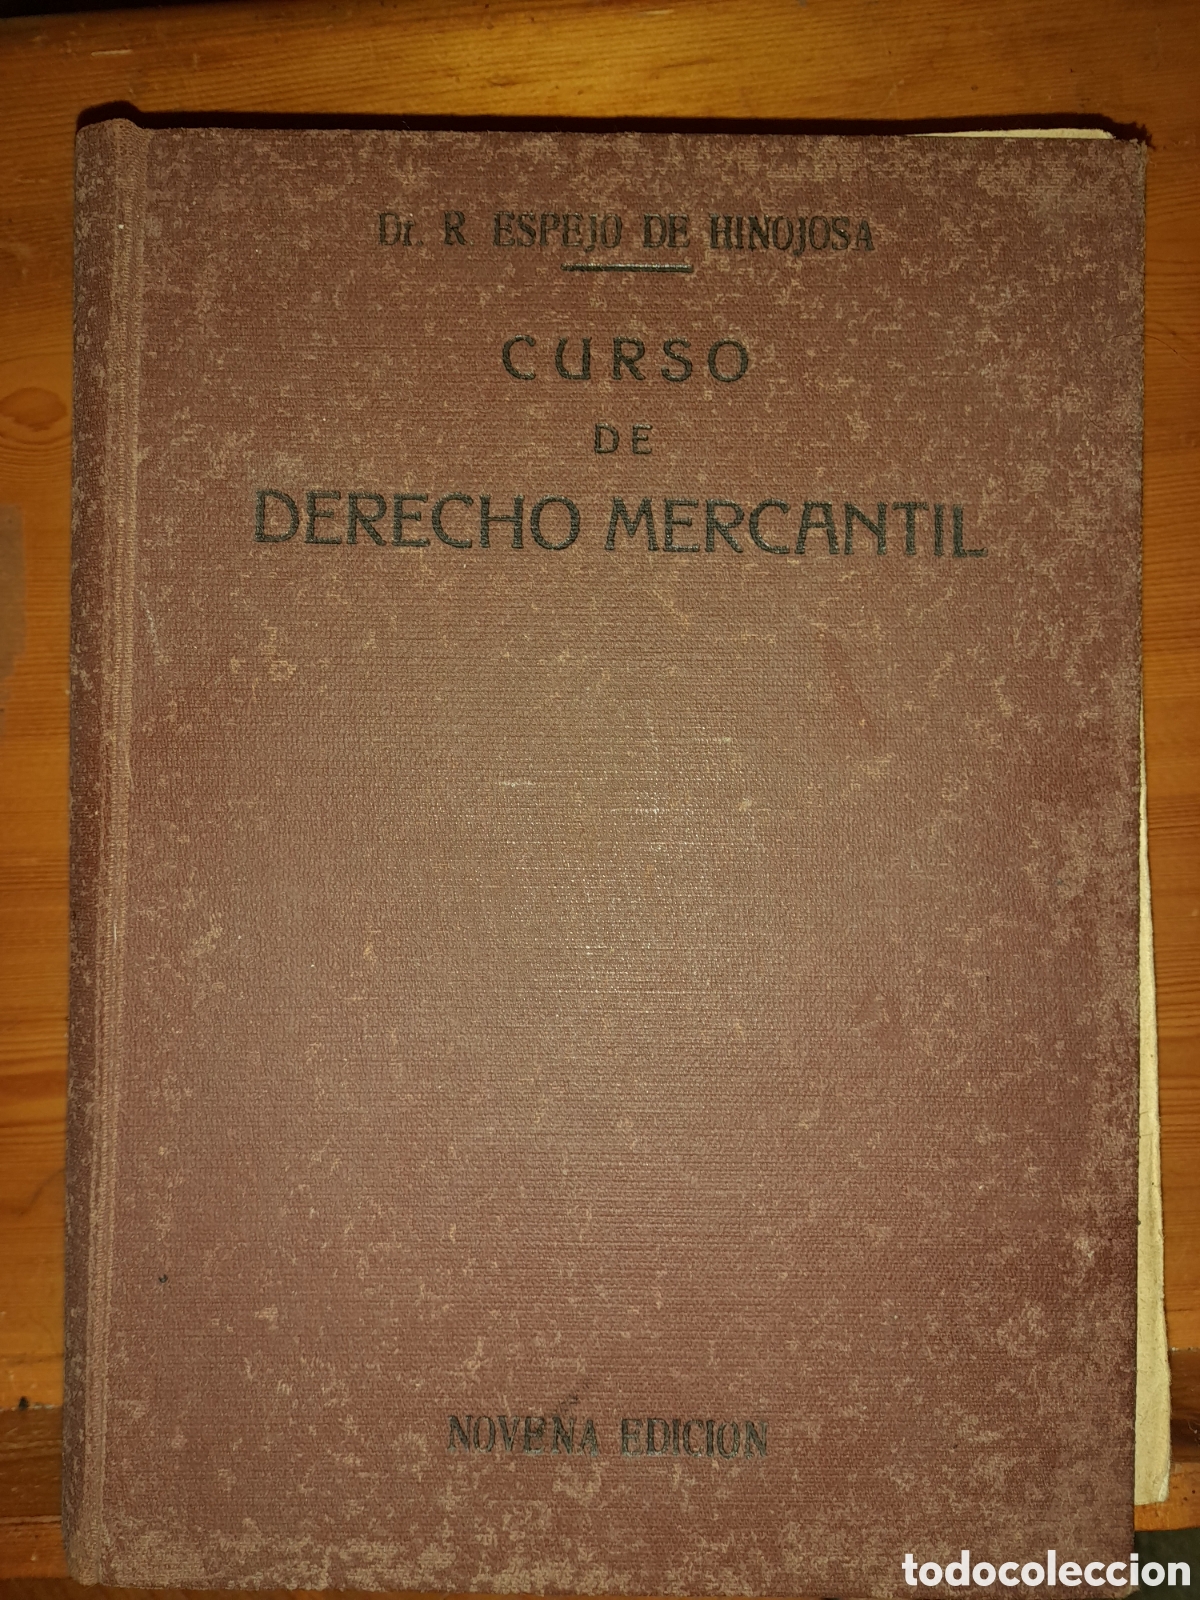 curso mercantil dr. espejo - Comprar Libros antiguos de derecho, economía y comercio en todocoleccion - 375197199